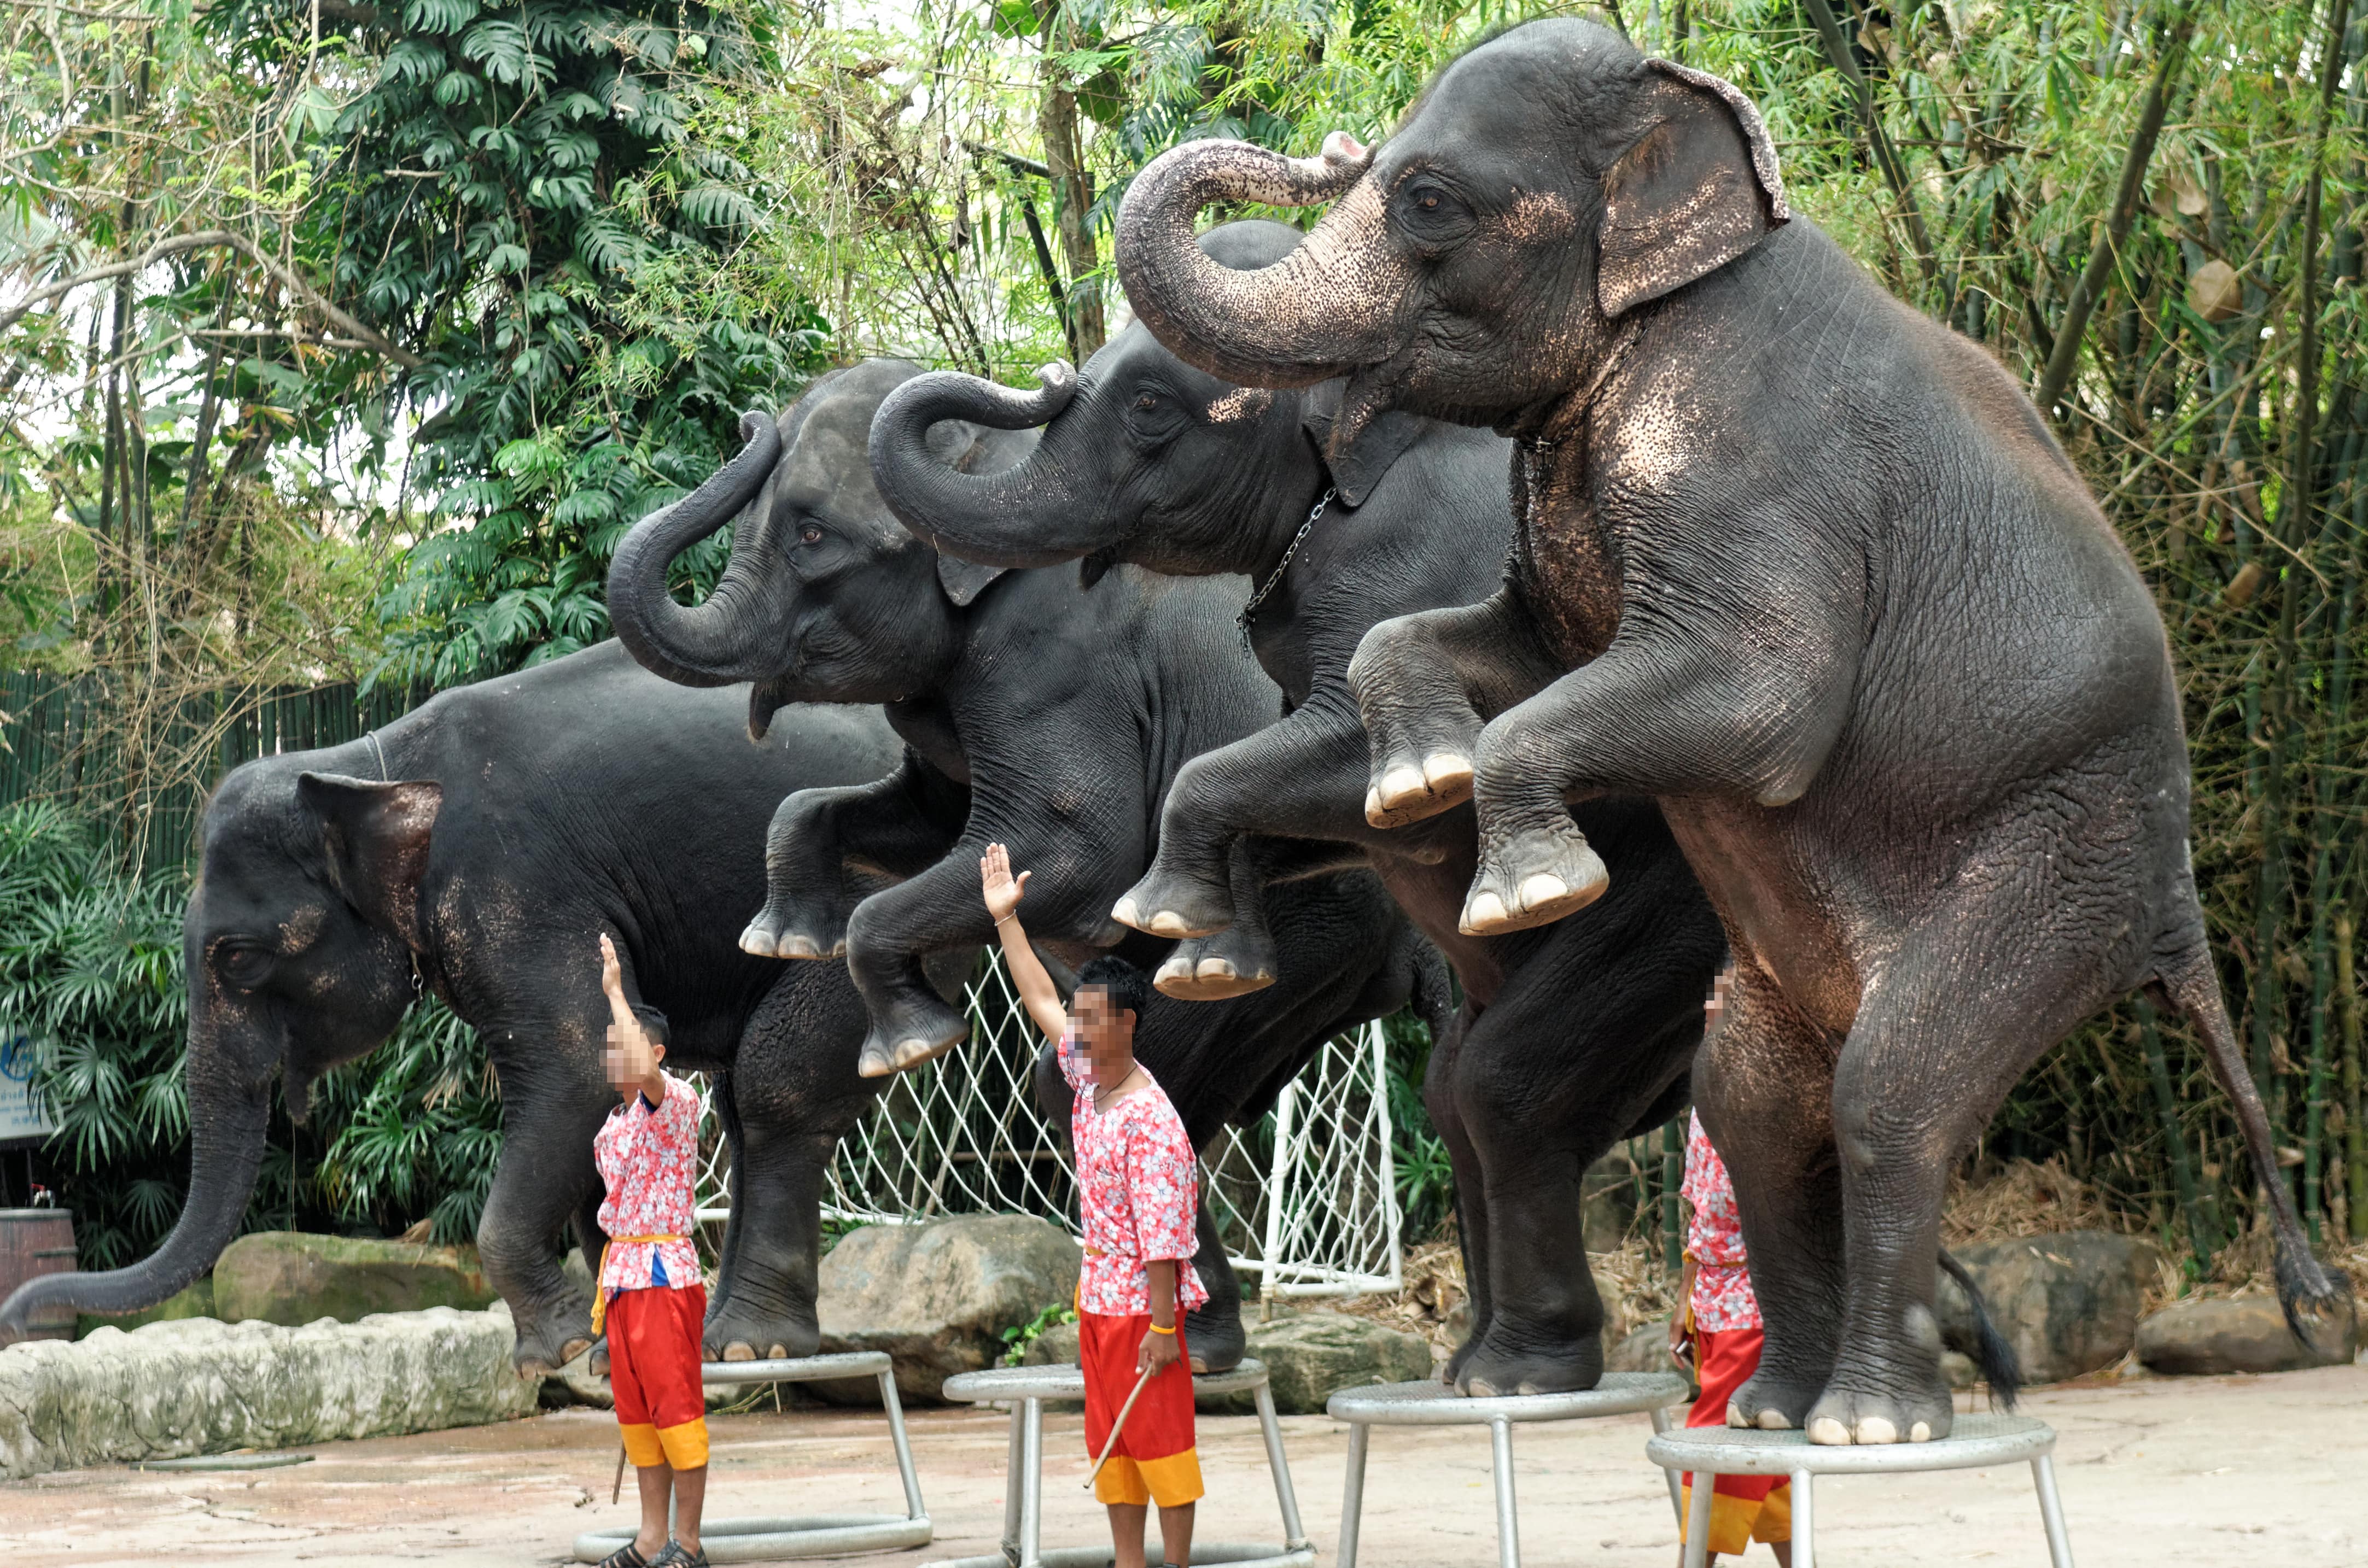 Elefantes se apresentando em uma atração turística tailandesa. 